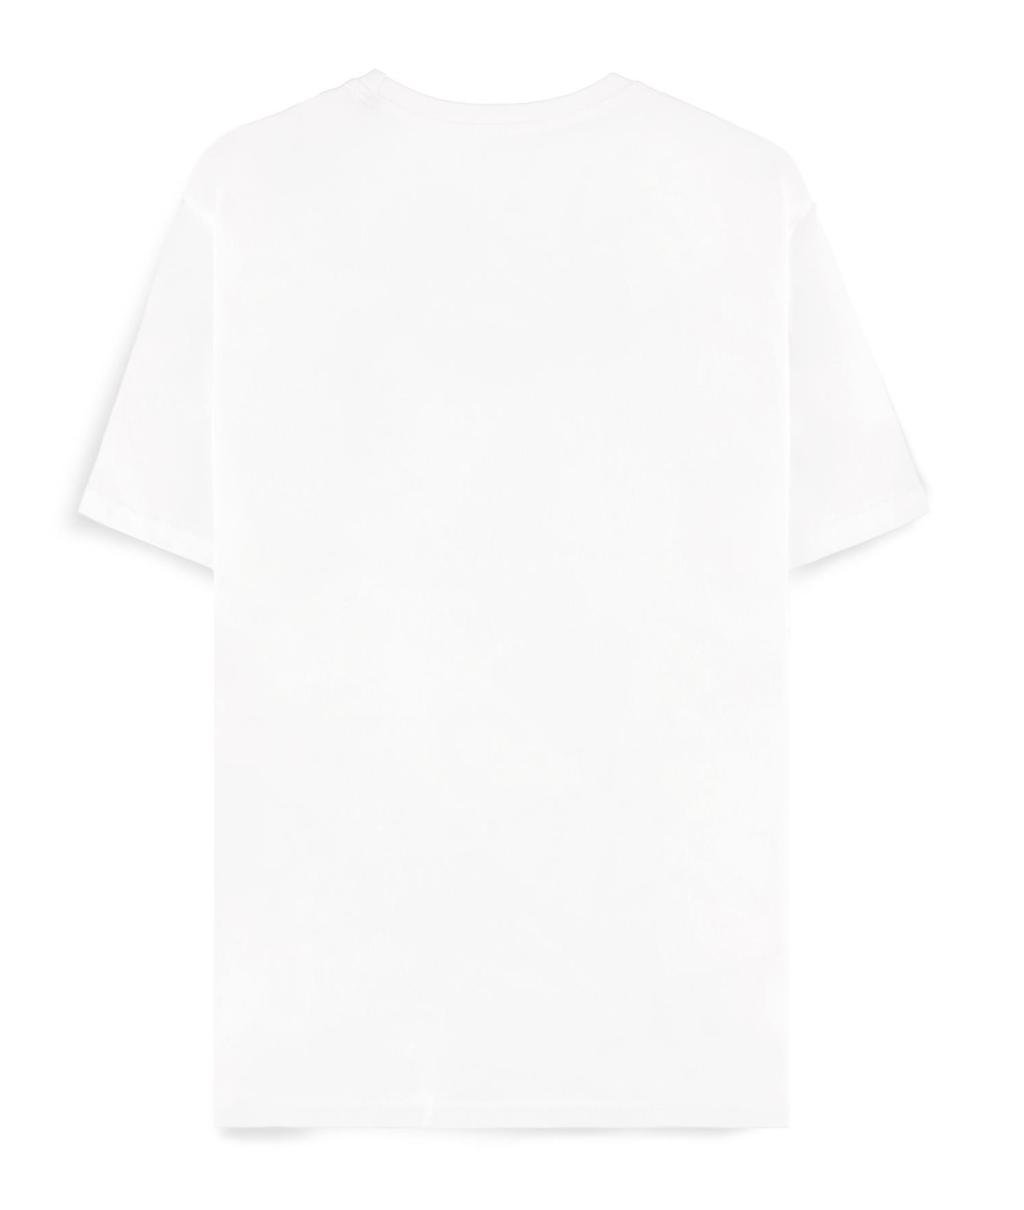 POKEMON - White Venusaur - Men's T-shirt (L)